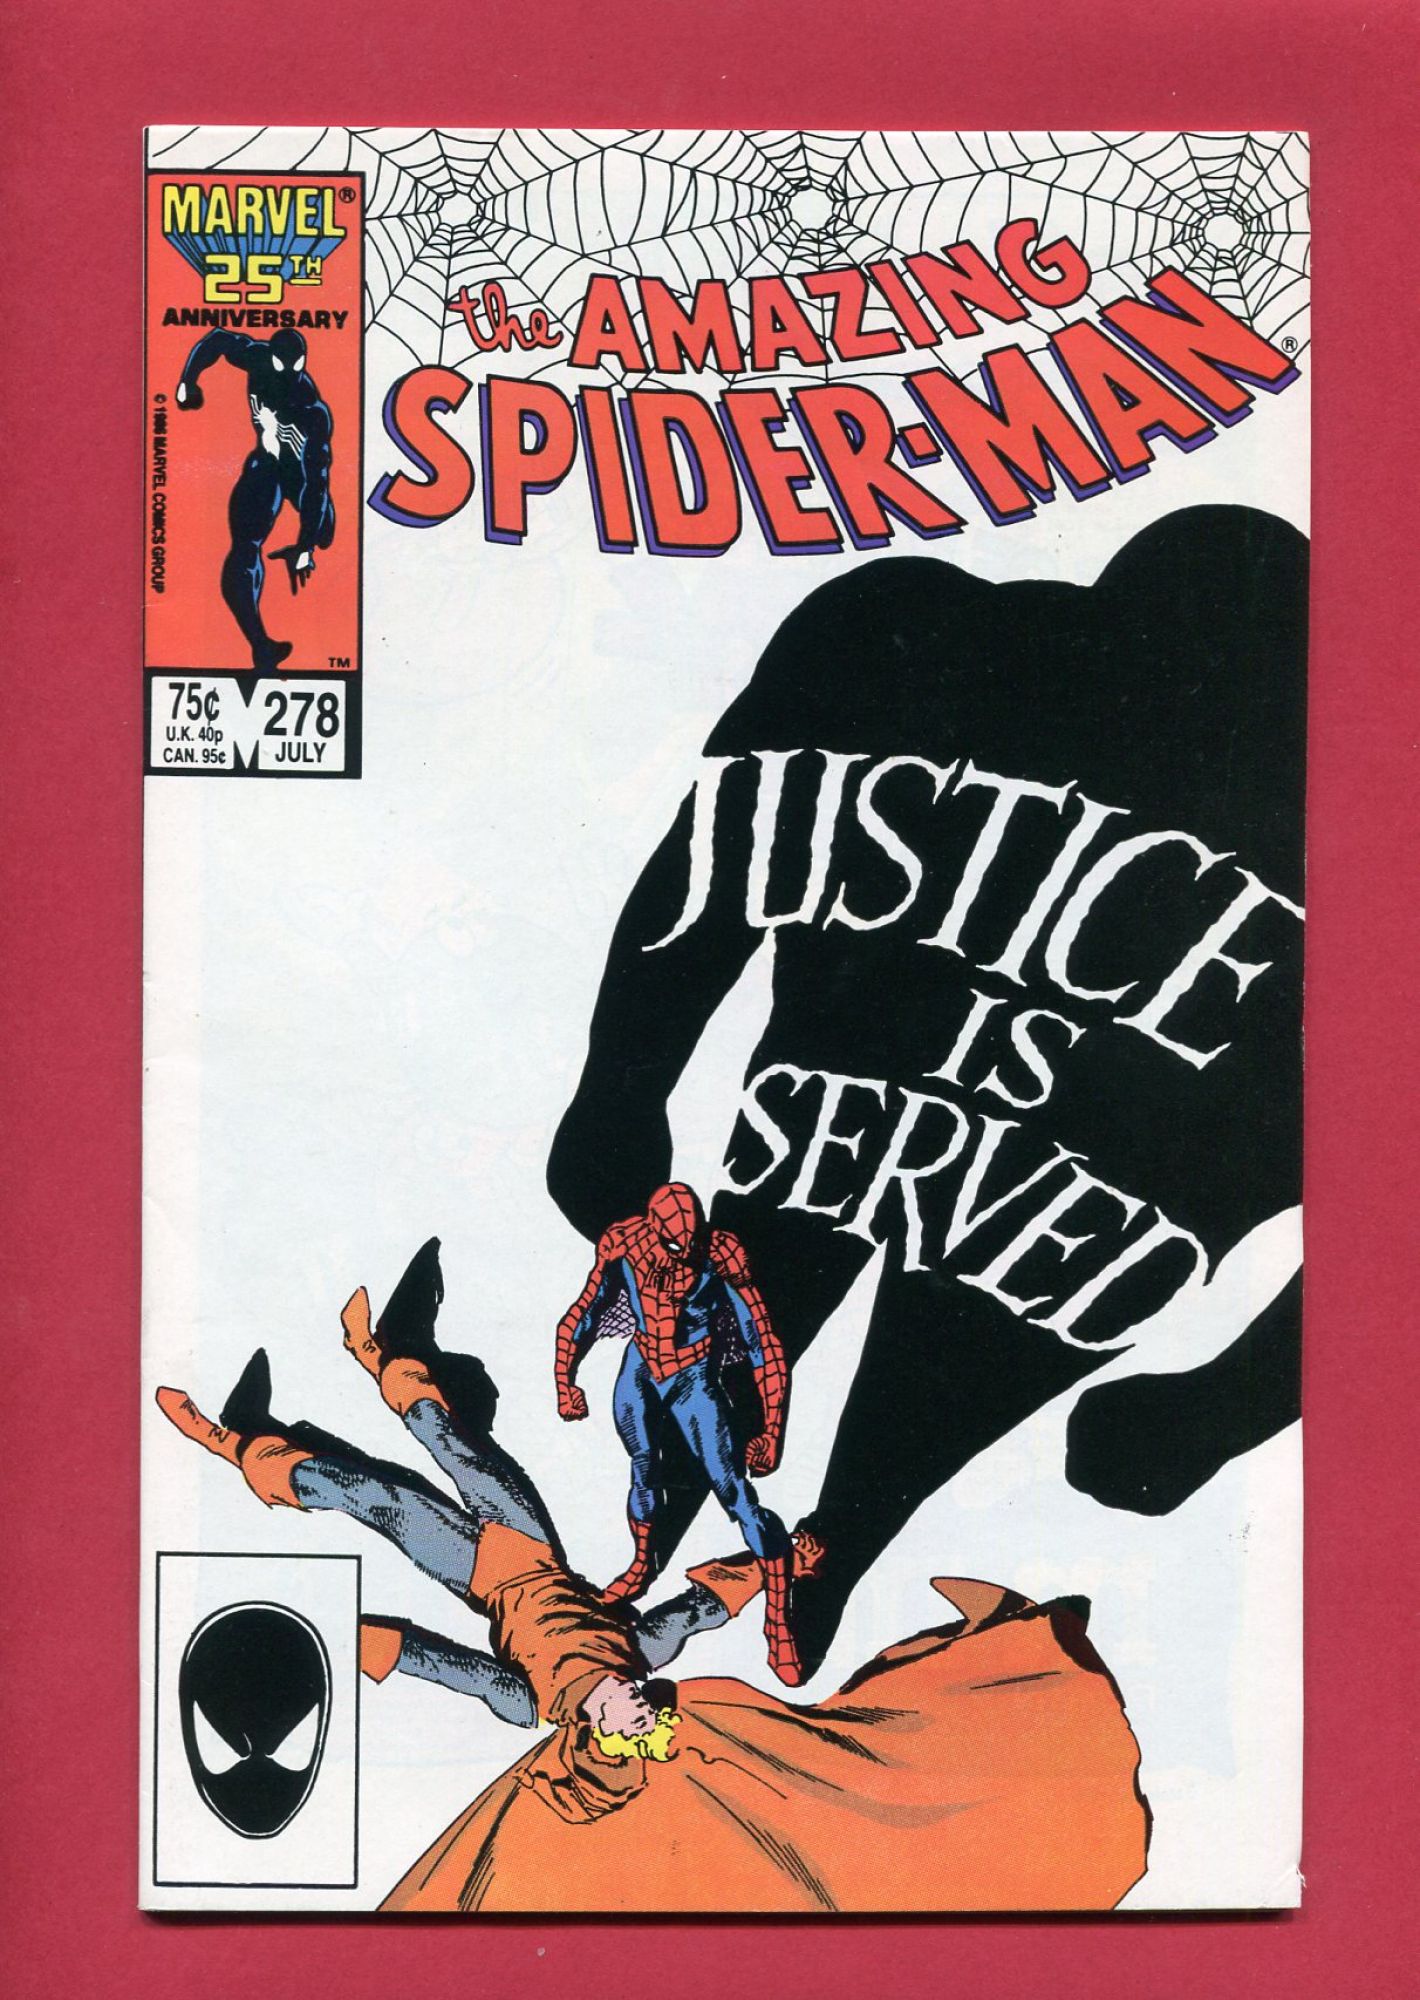 Amazing Spider-Man #278, Jul 1986, 8.5 VF+